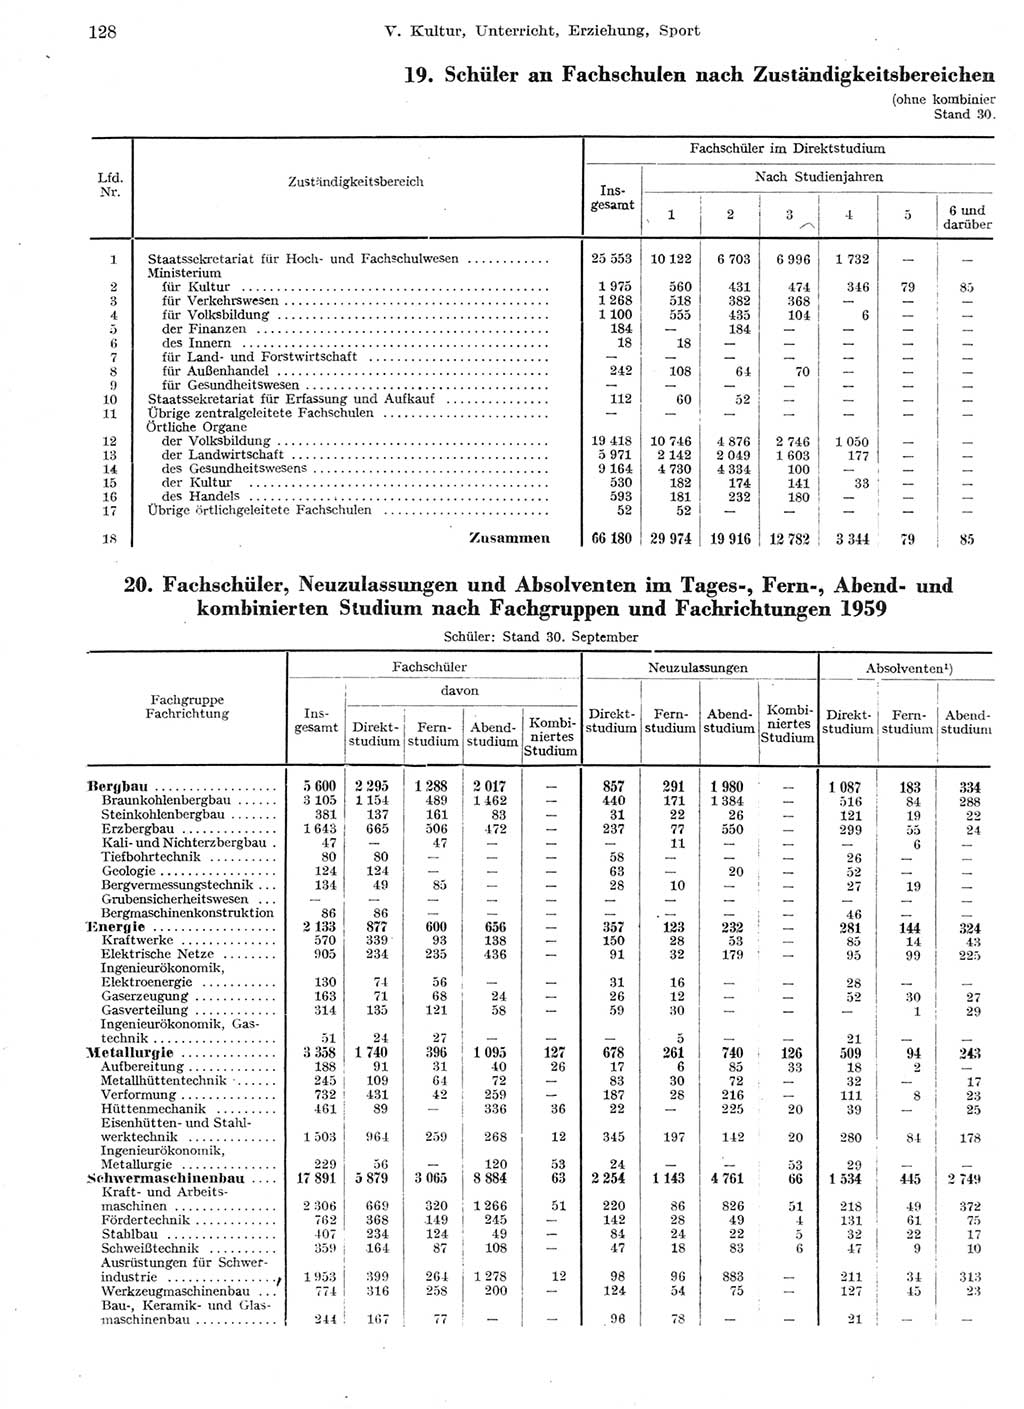 Statistisches Jahrbuch der Deutschen Demokratischen Republik (DDR) 1959, Seite 128 (Stat. Jb. DDR 1959, S. 128)